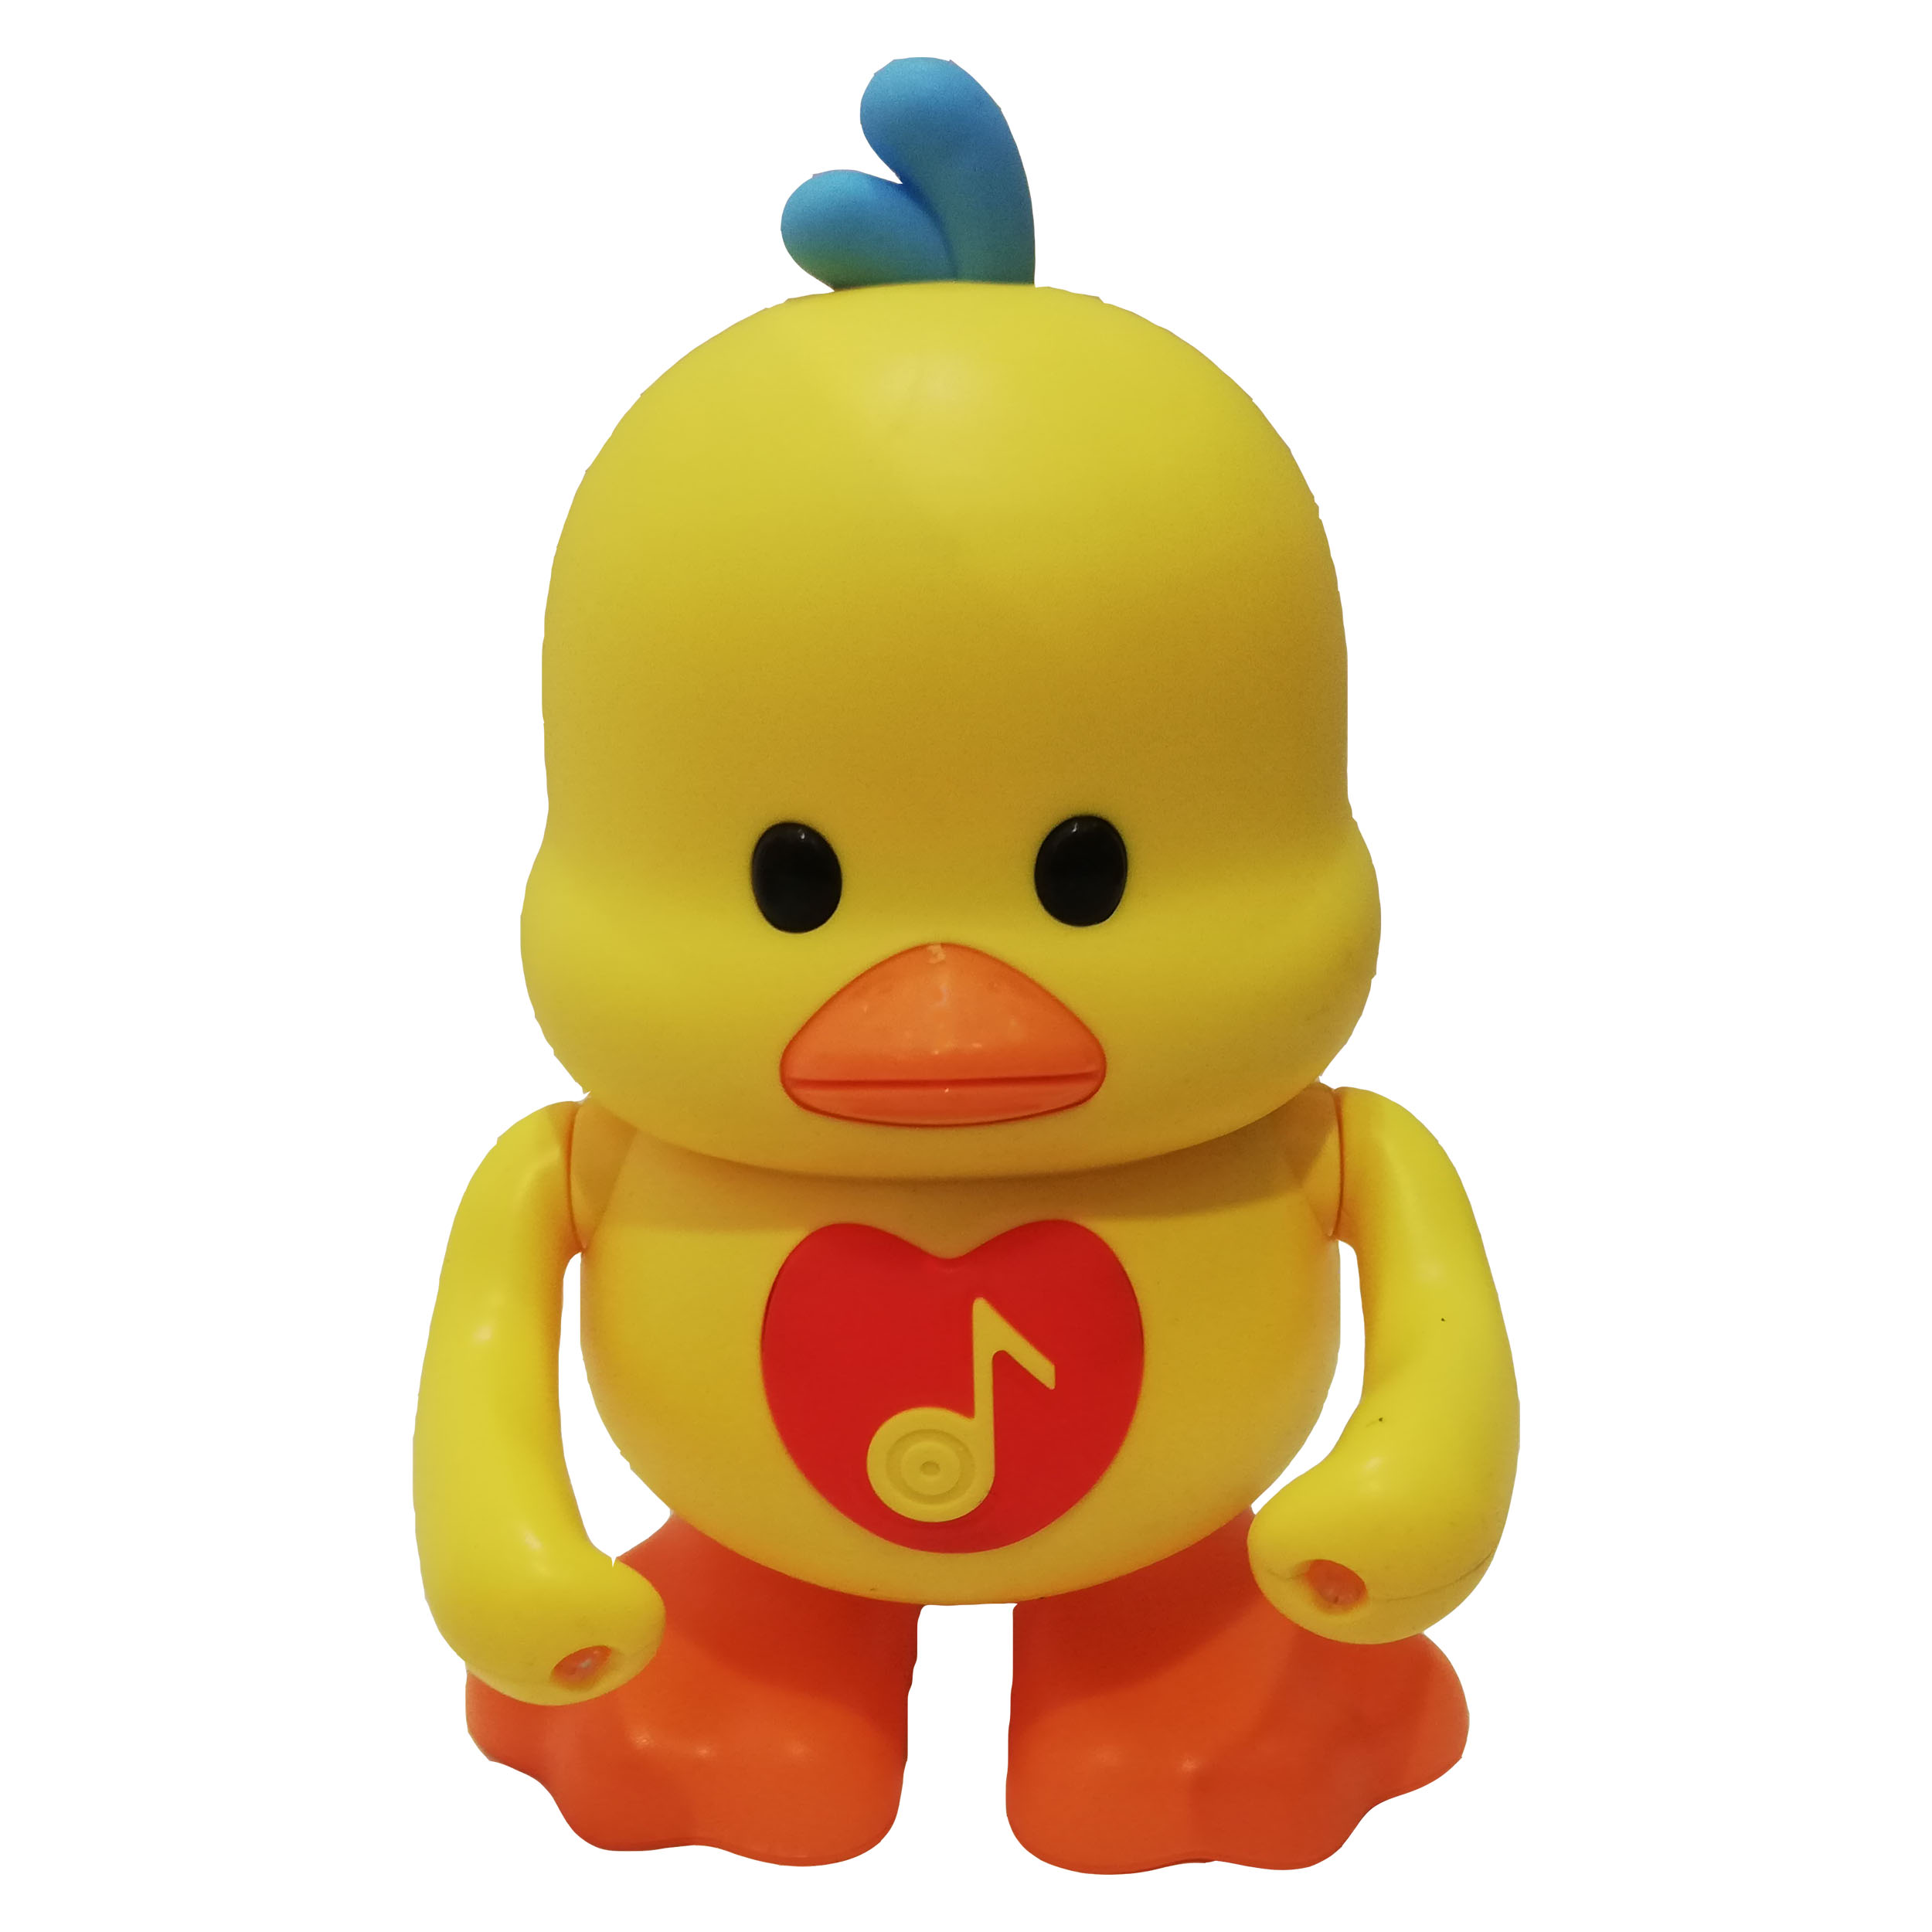  اسباب بازی YJ toys طرح جوجه اردک کد 3022